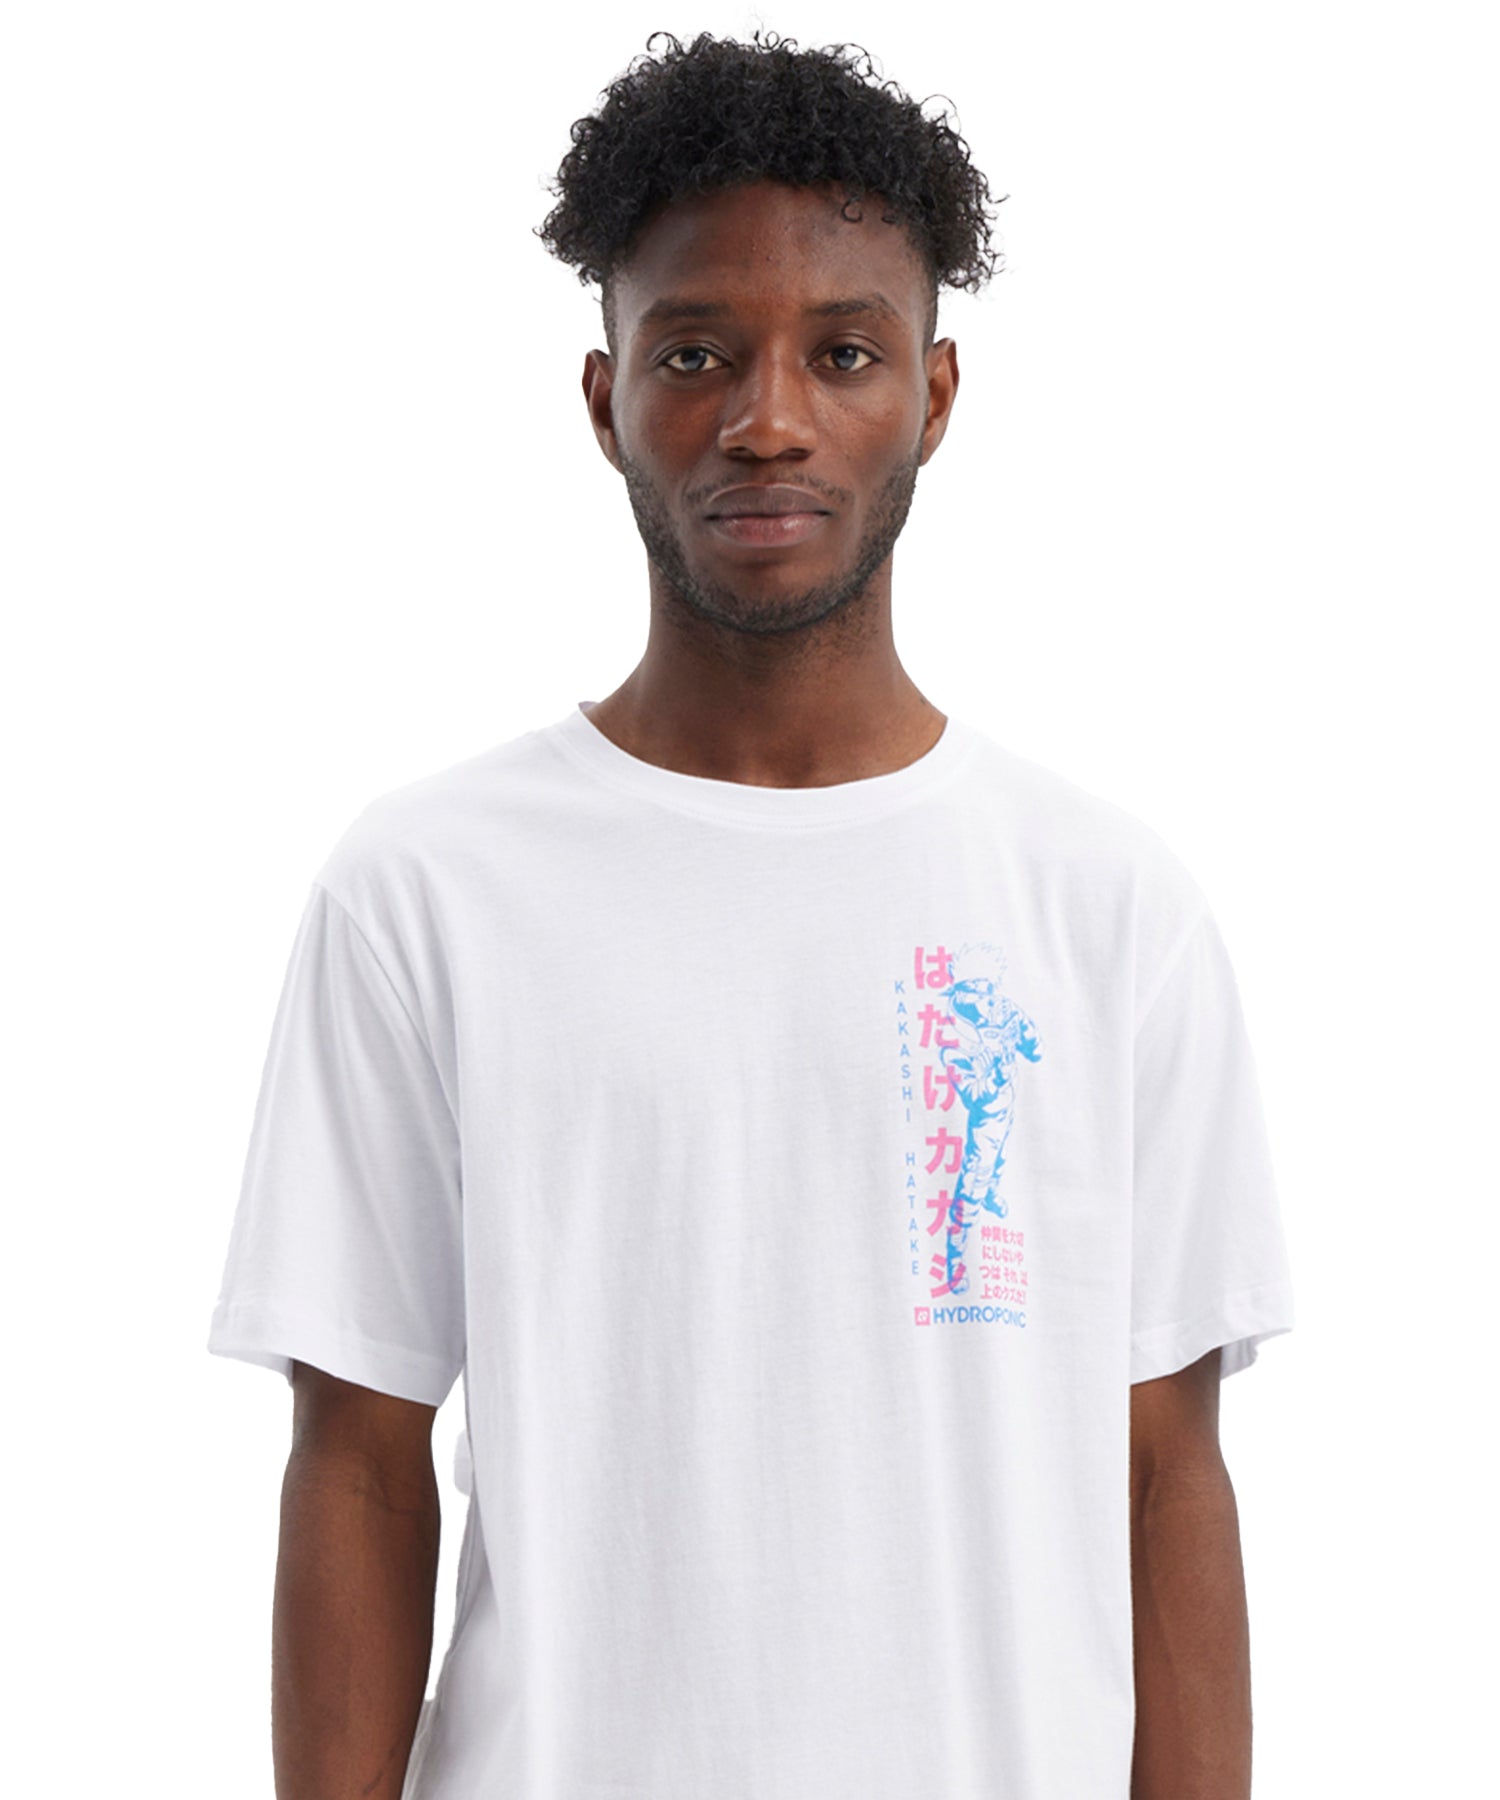 hydroponic-camiseta-naruto-kakashi-color-blanco-serigrafía-naruto-en-el-pecho-manga-corta-algodón-100%